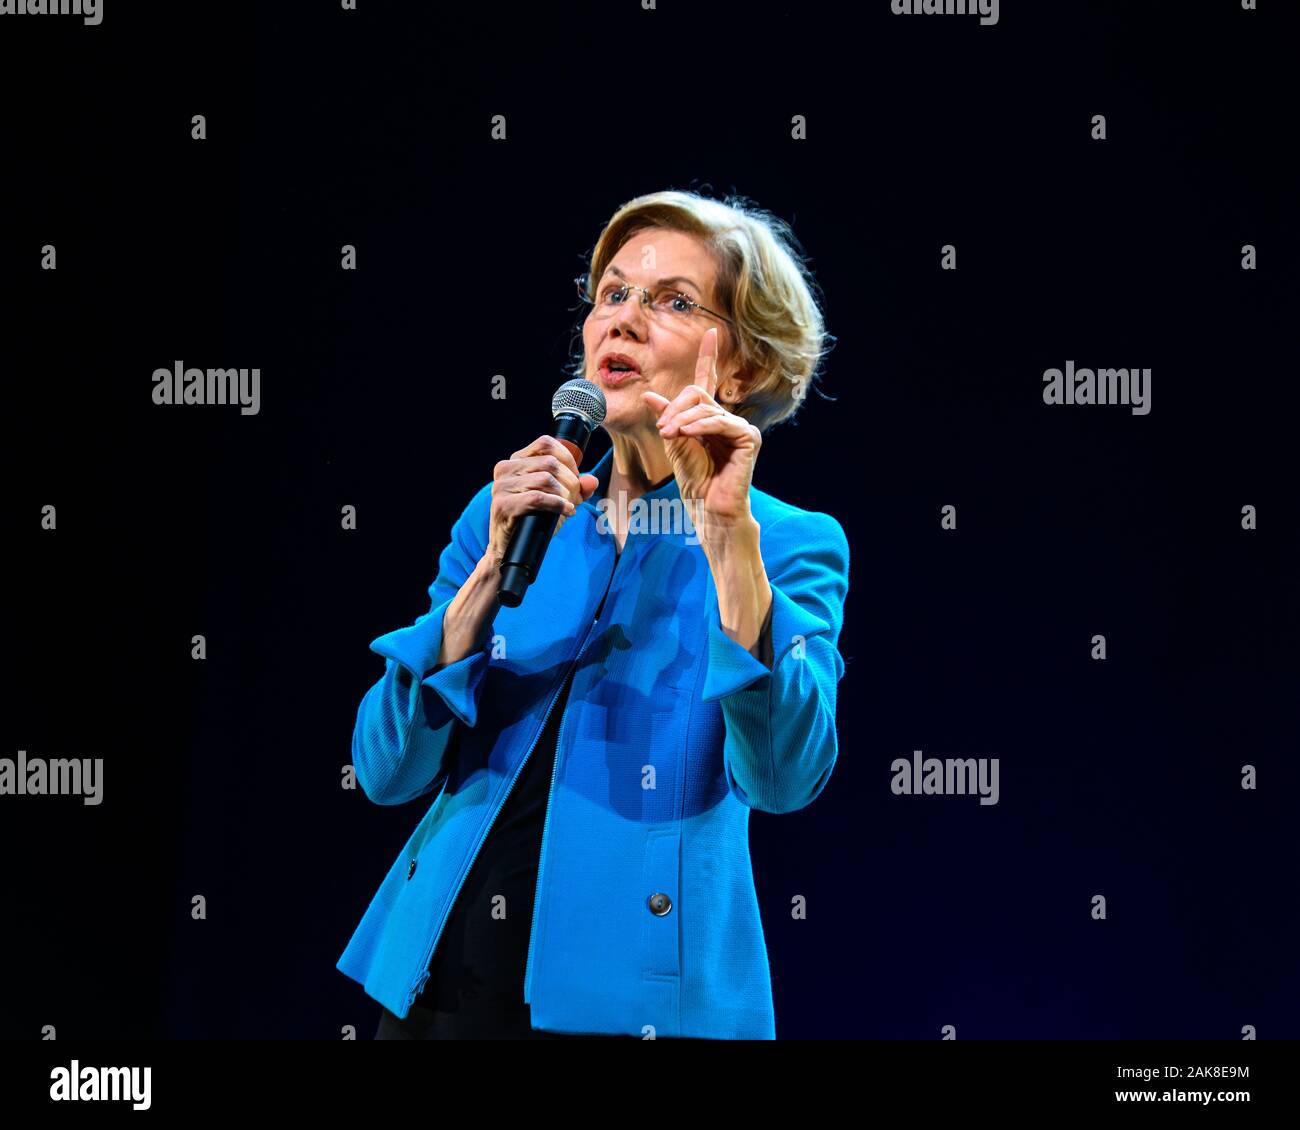 New York, États-Unis, 7 janvier 2020. Le sénateur américain et candidate présidentielle Elizabeth Warren répond à un rassemblement électoral à Brooklyn's Kings Theatre à New York. Credit : Enrique Shore/Alamy Live News Banque D'Images